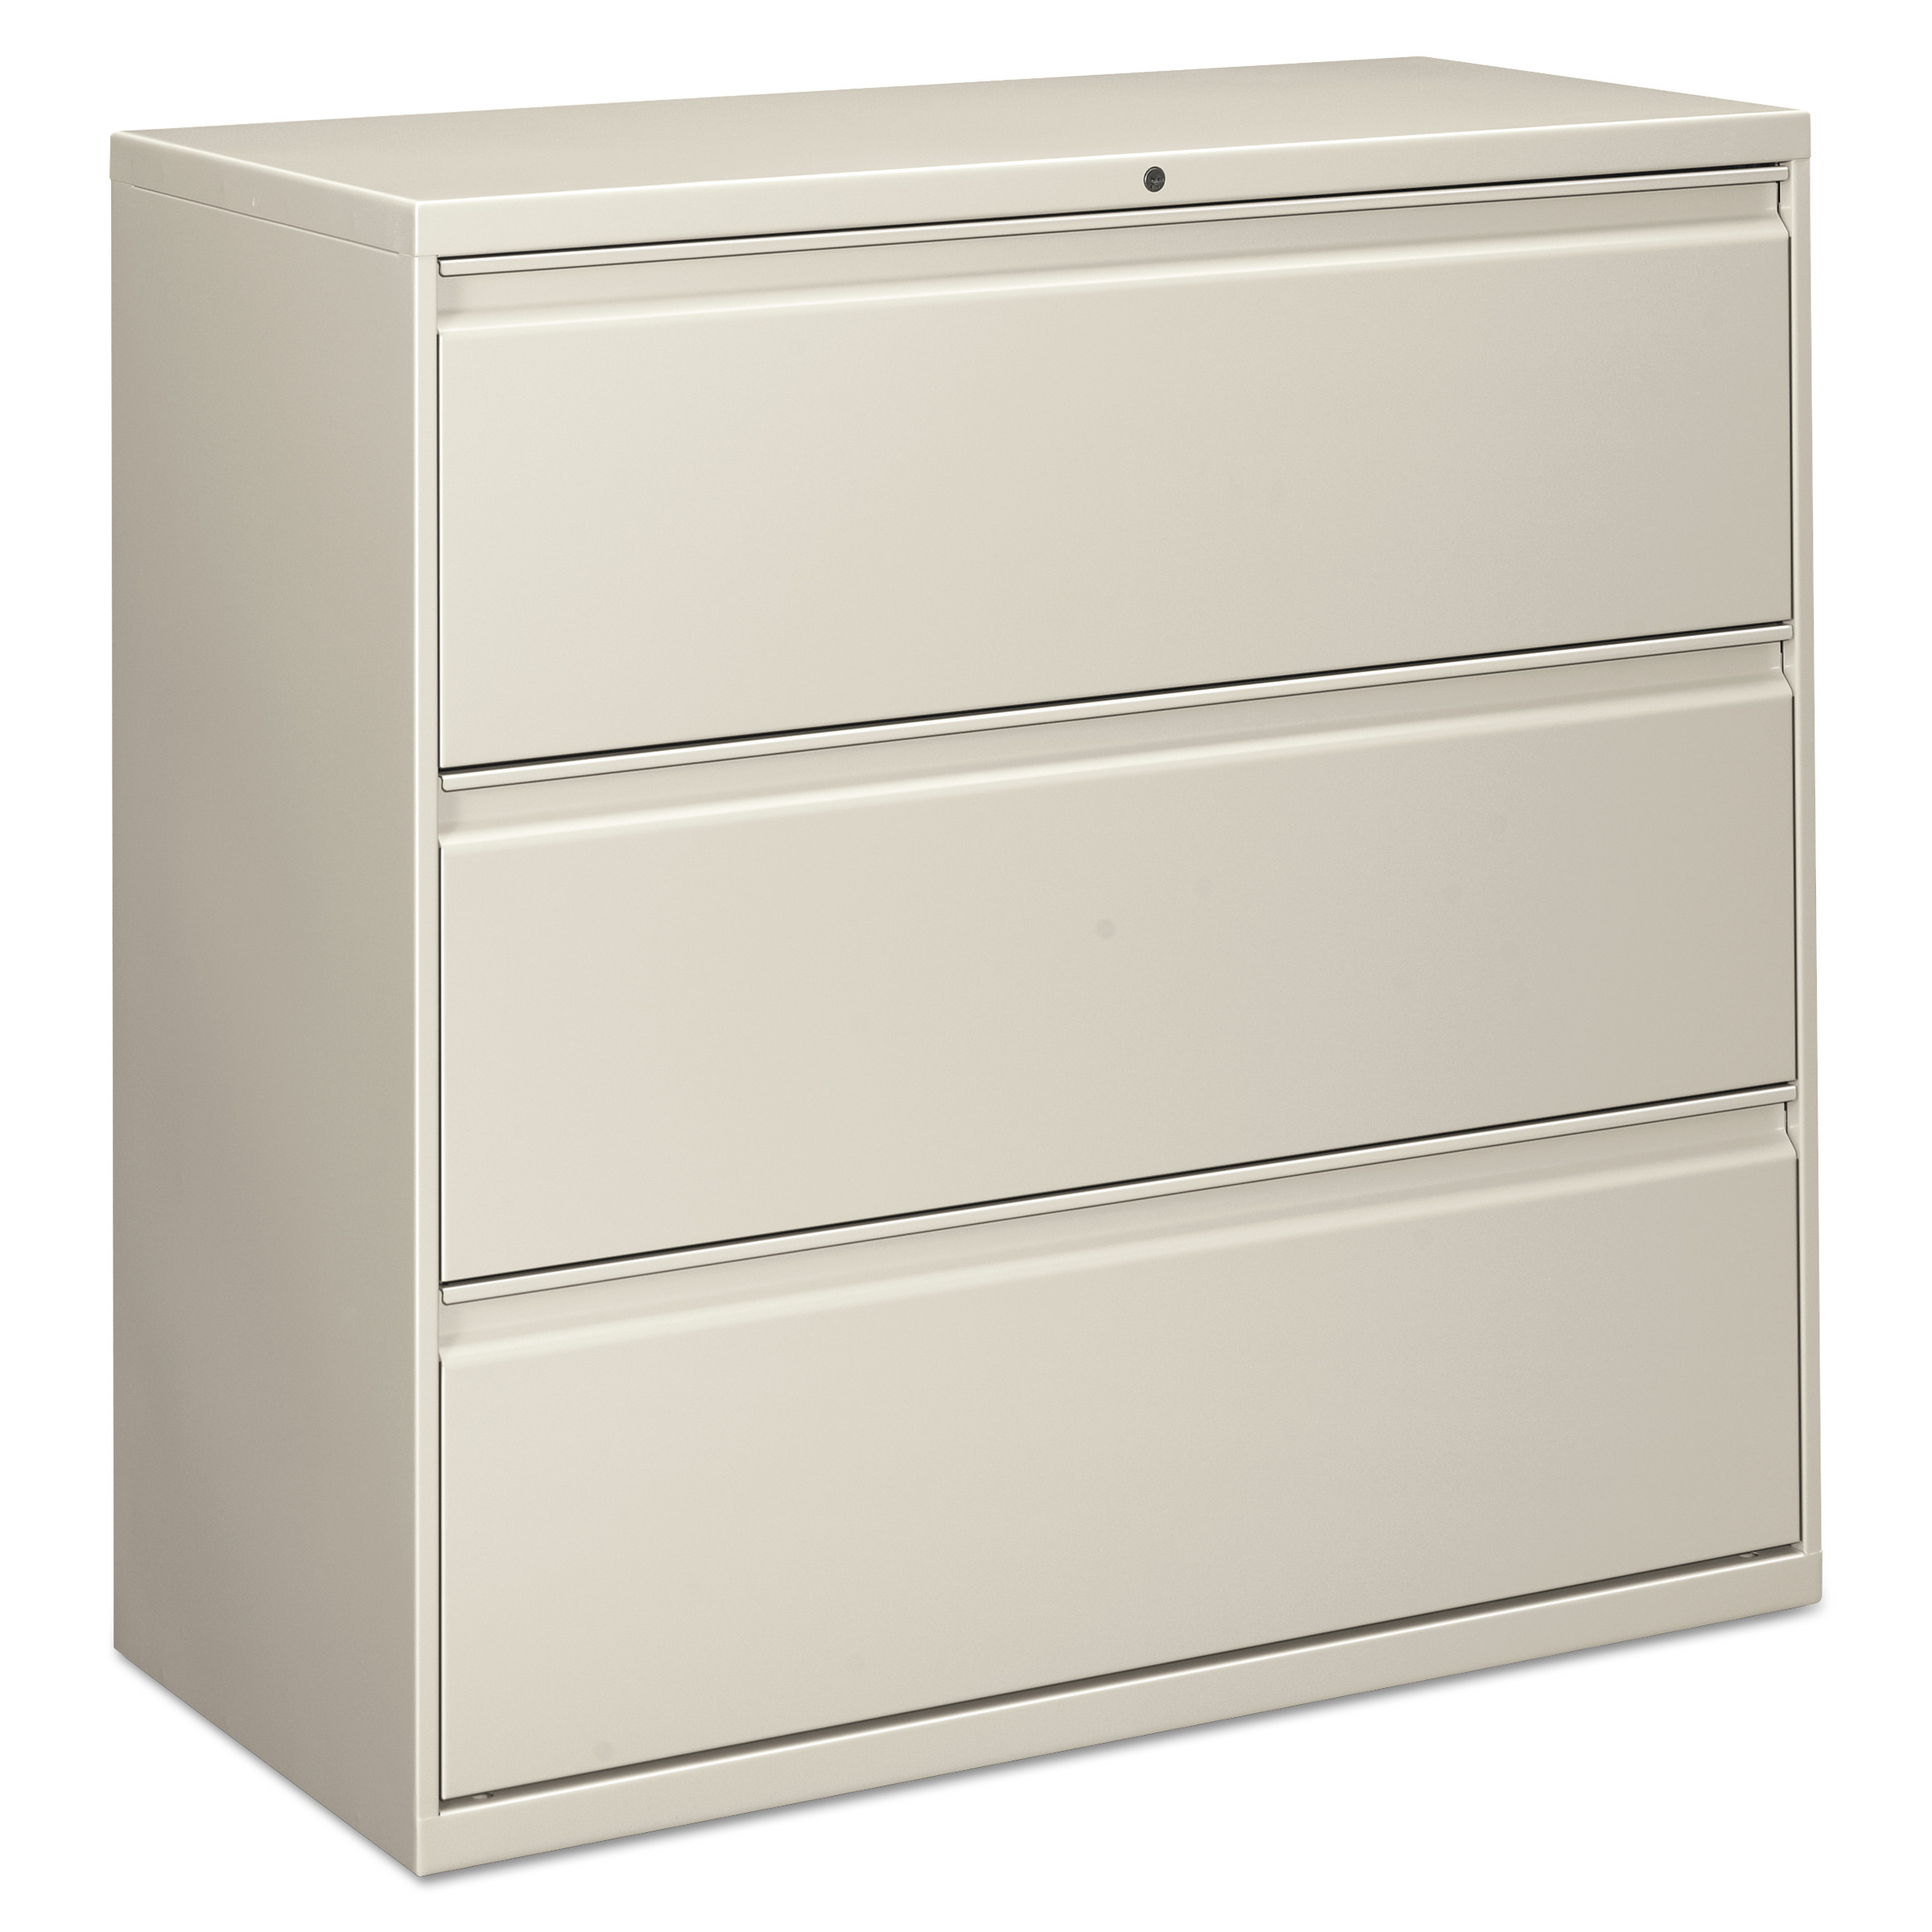  Alera ALELF4241LG Three-Drawer Lateral File Cabinet, 42w x 18d x 39.5h, Light Gray (ALELF4241LG) 